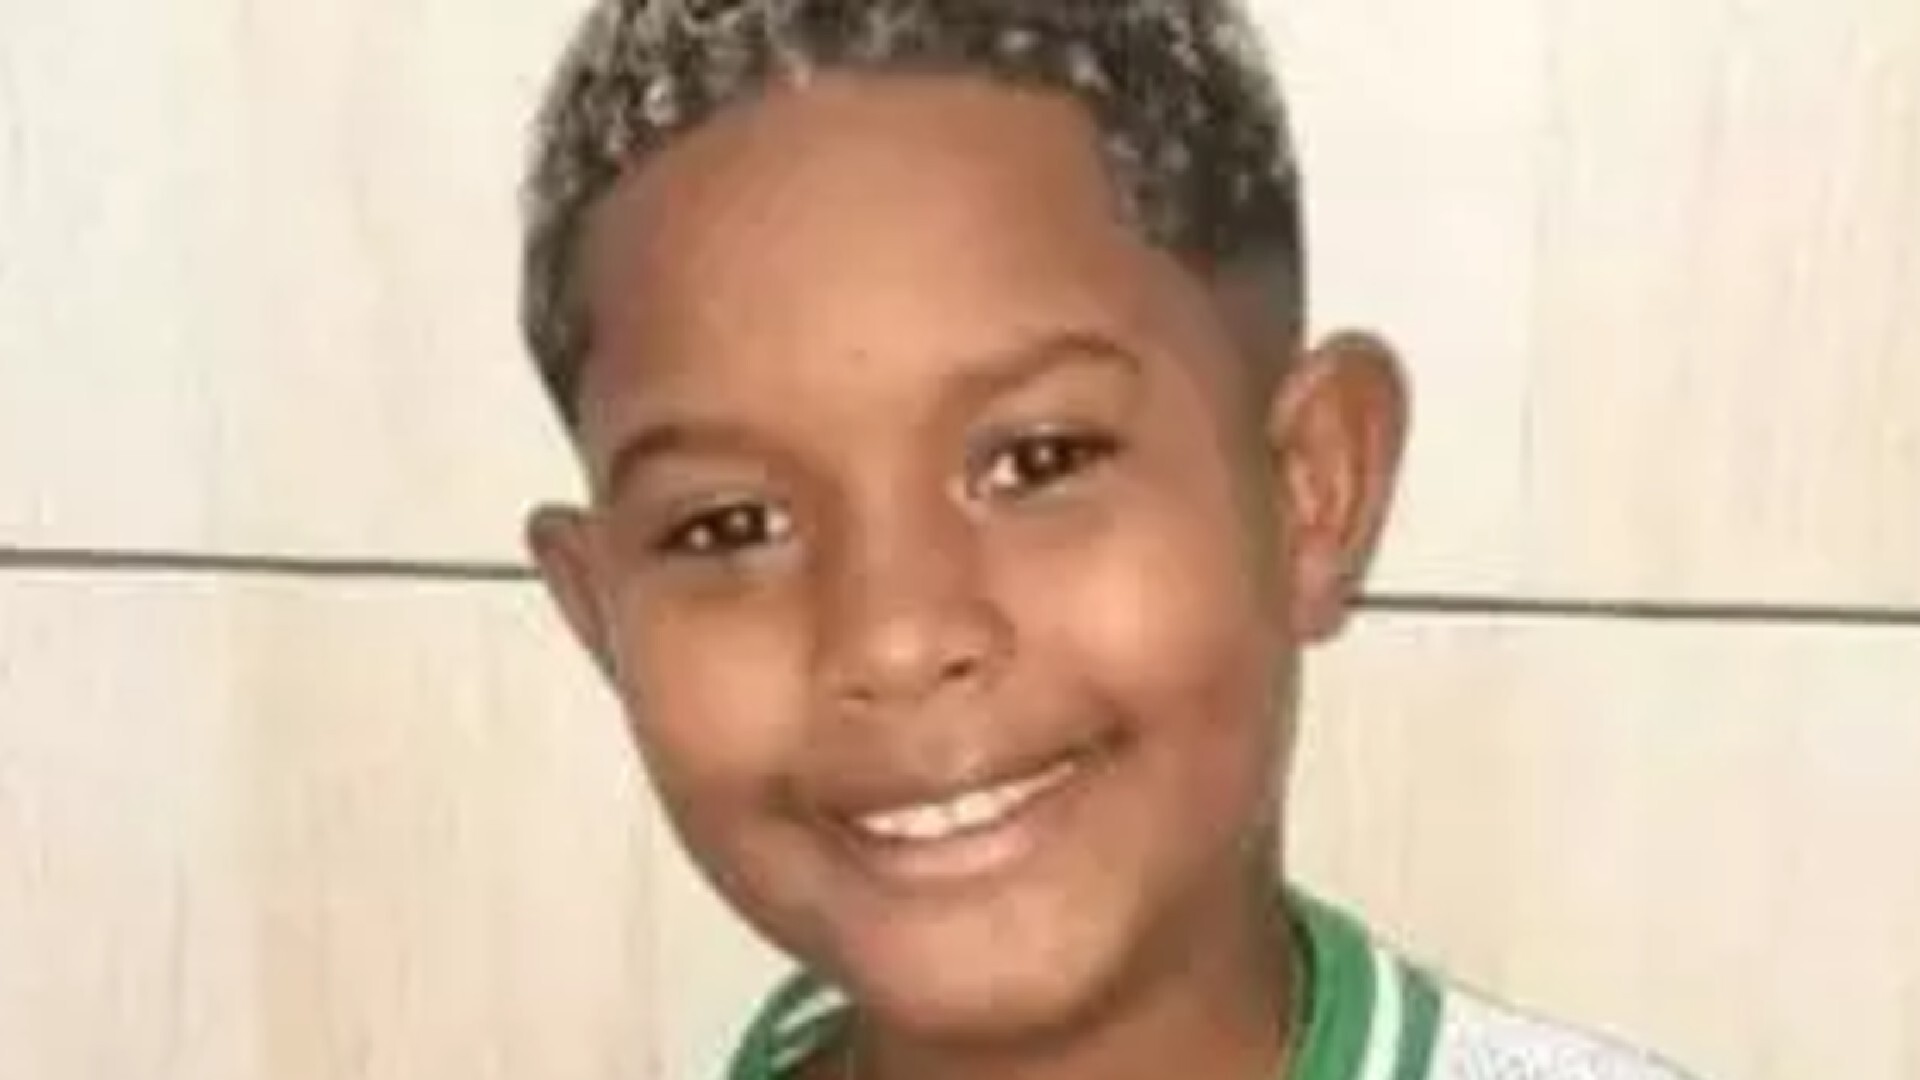  Estado de saúde de Kaio Guilherme da Silva, que foi baleado na sexta-feira, é considerado grave; criança está em coma